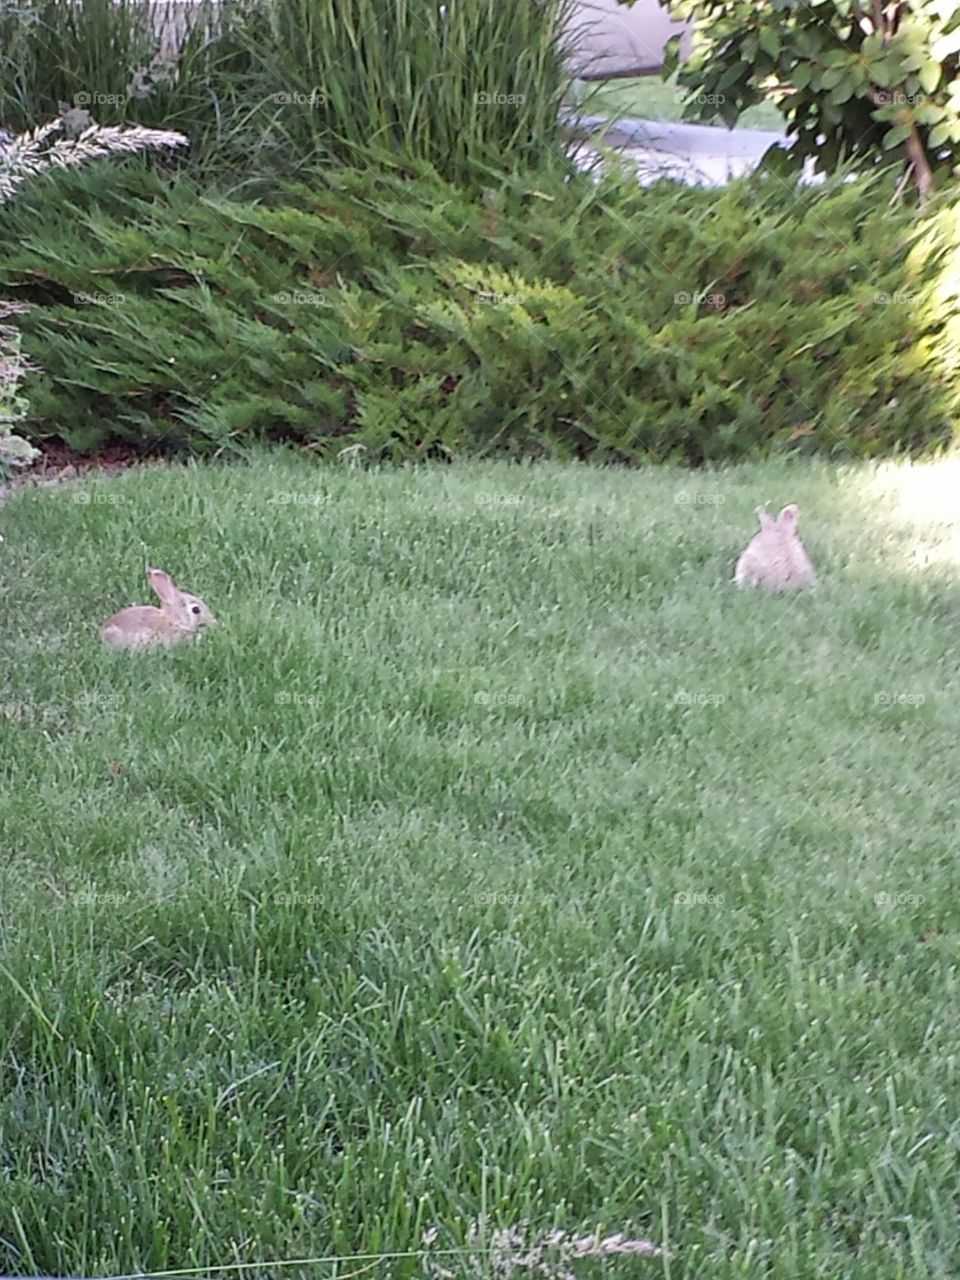 bunny's